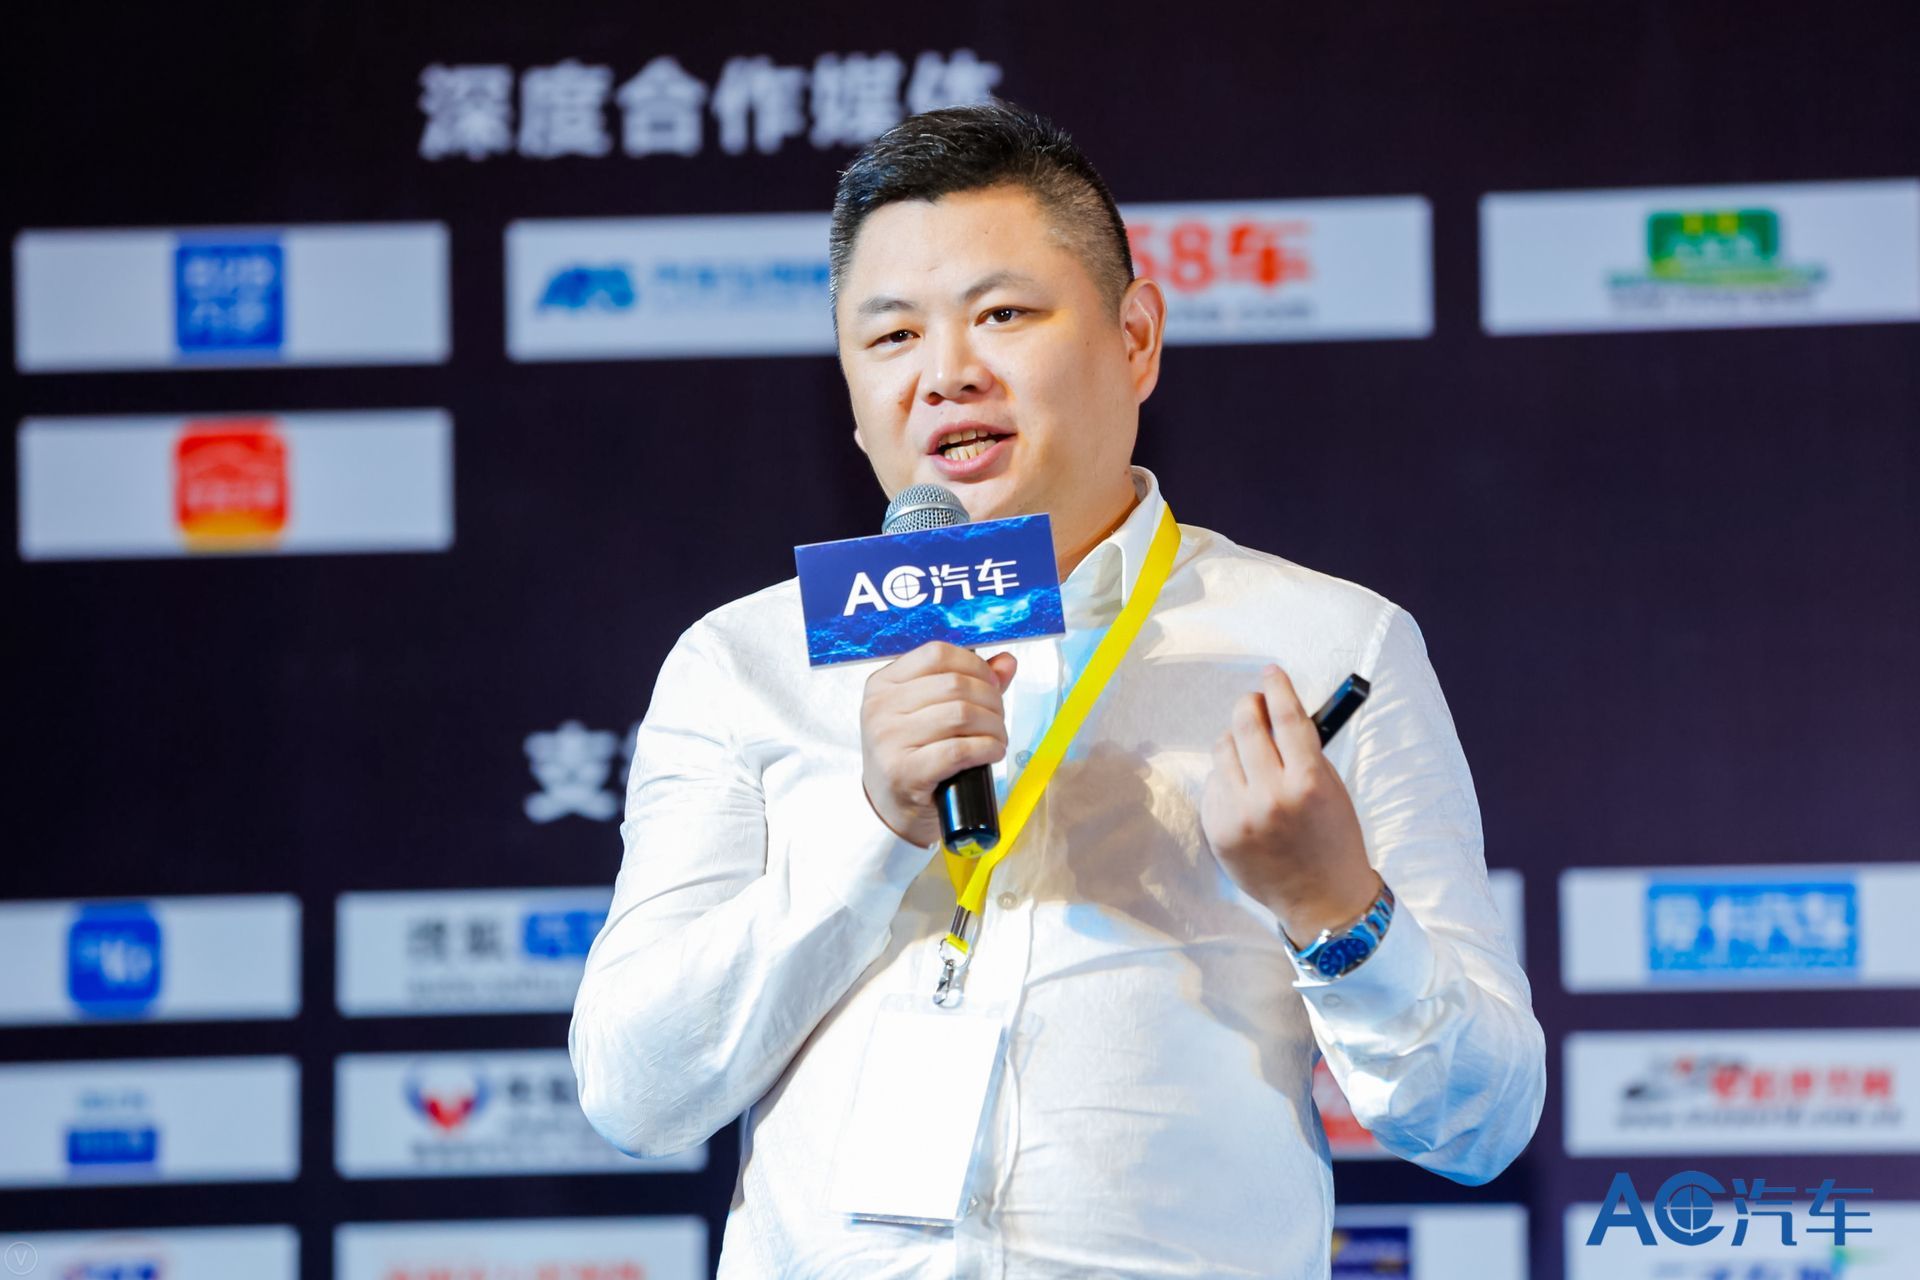 【AC直播】超级车店创始人、CEO 刘斌：门店管理系统如何与供应链发挥协同效应